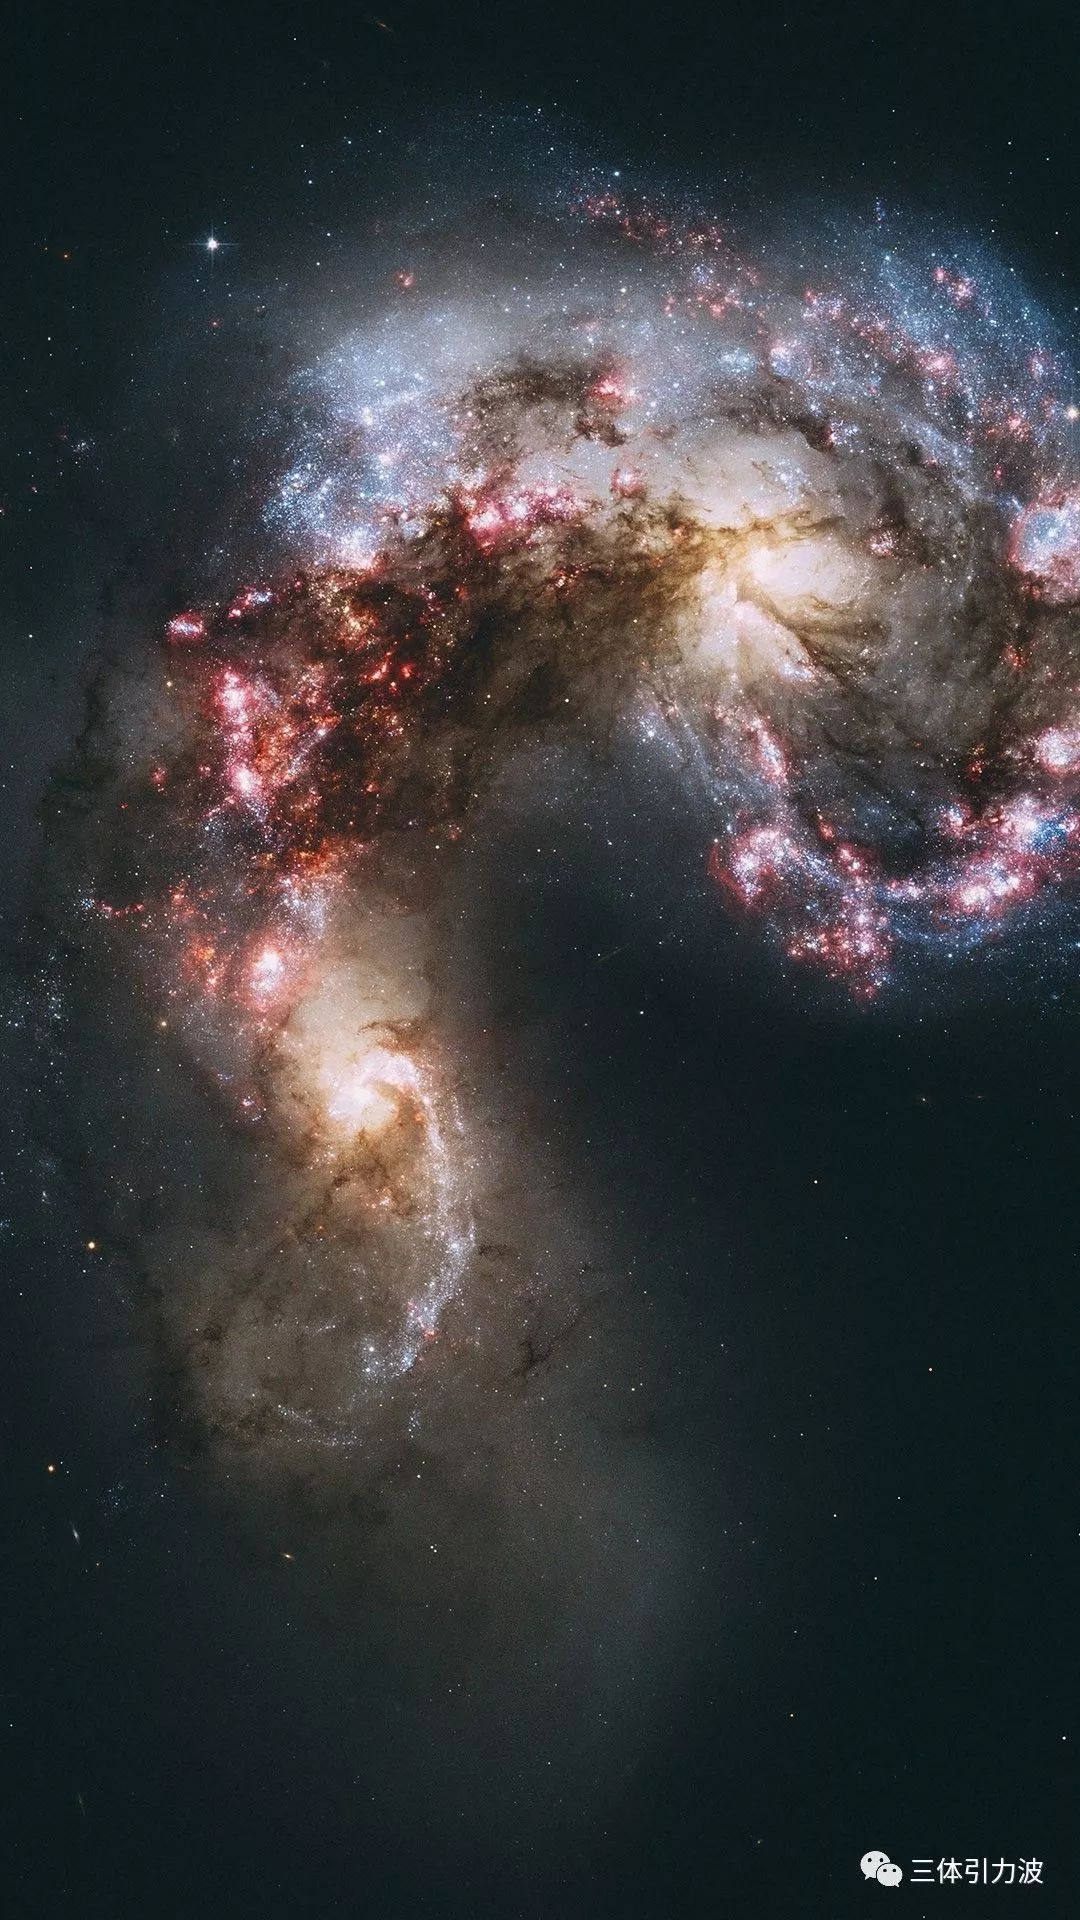 50亿年后银河系&仙女座星系合并成这样?